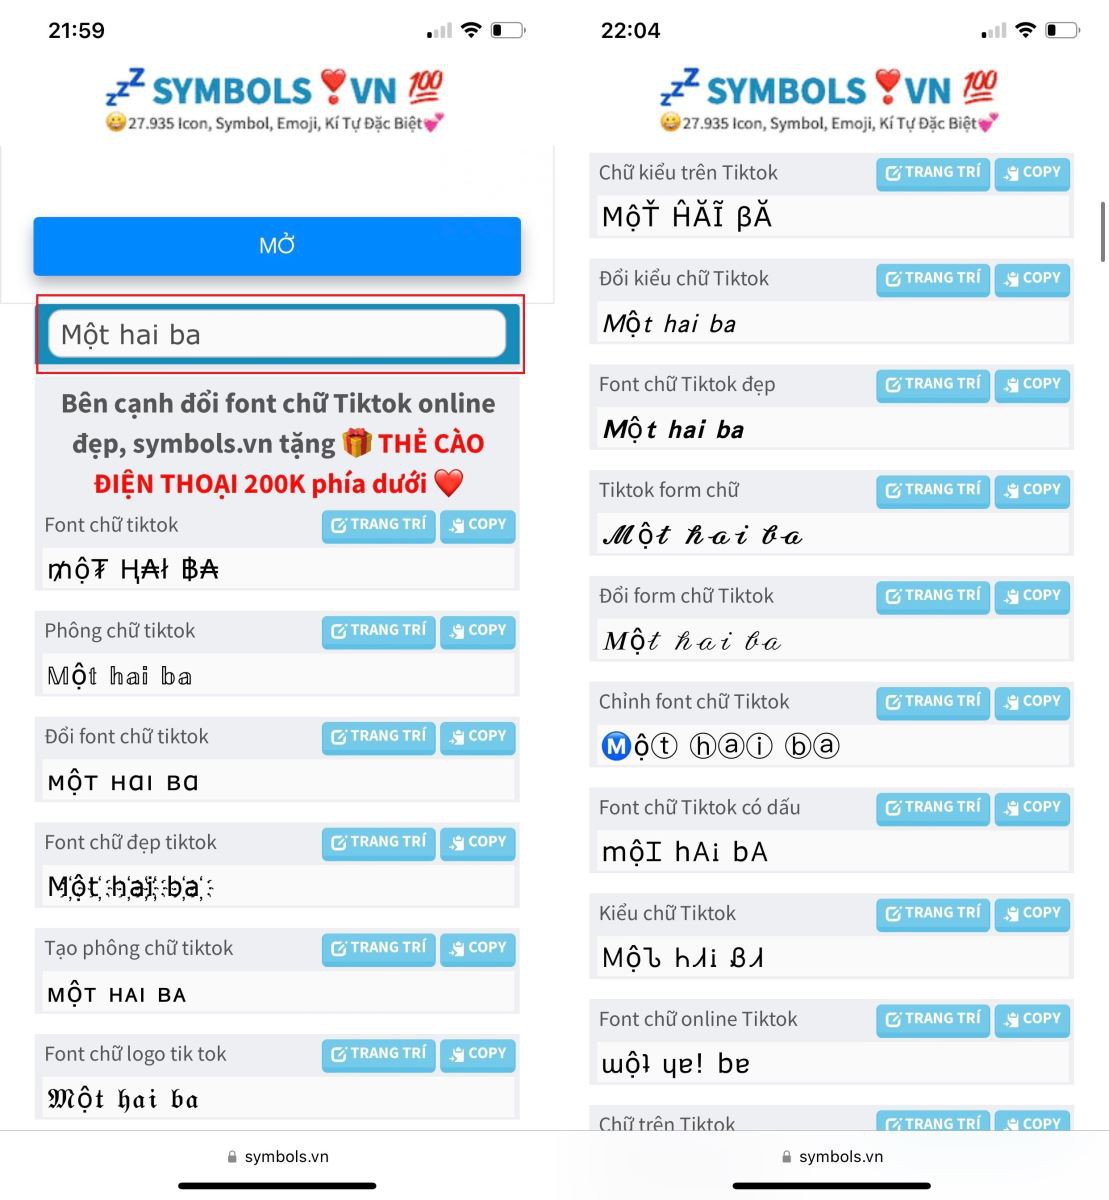 TikTok là ứng dụng phổ biến trên thế giới và đang ngày càng được ưa chuộng hơn tại Việt Nam. Với công cụ đổi font chữ TikTok, bạn có thể dễ dàng thể hiện cá tính của mình và tạo ra nhiều video thu hút hơn. Hãy tìm kiếm trên ứng dụng store của bạn để tìm ra những font chữ thú vị nhất cho nội dung TikTok của mình.